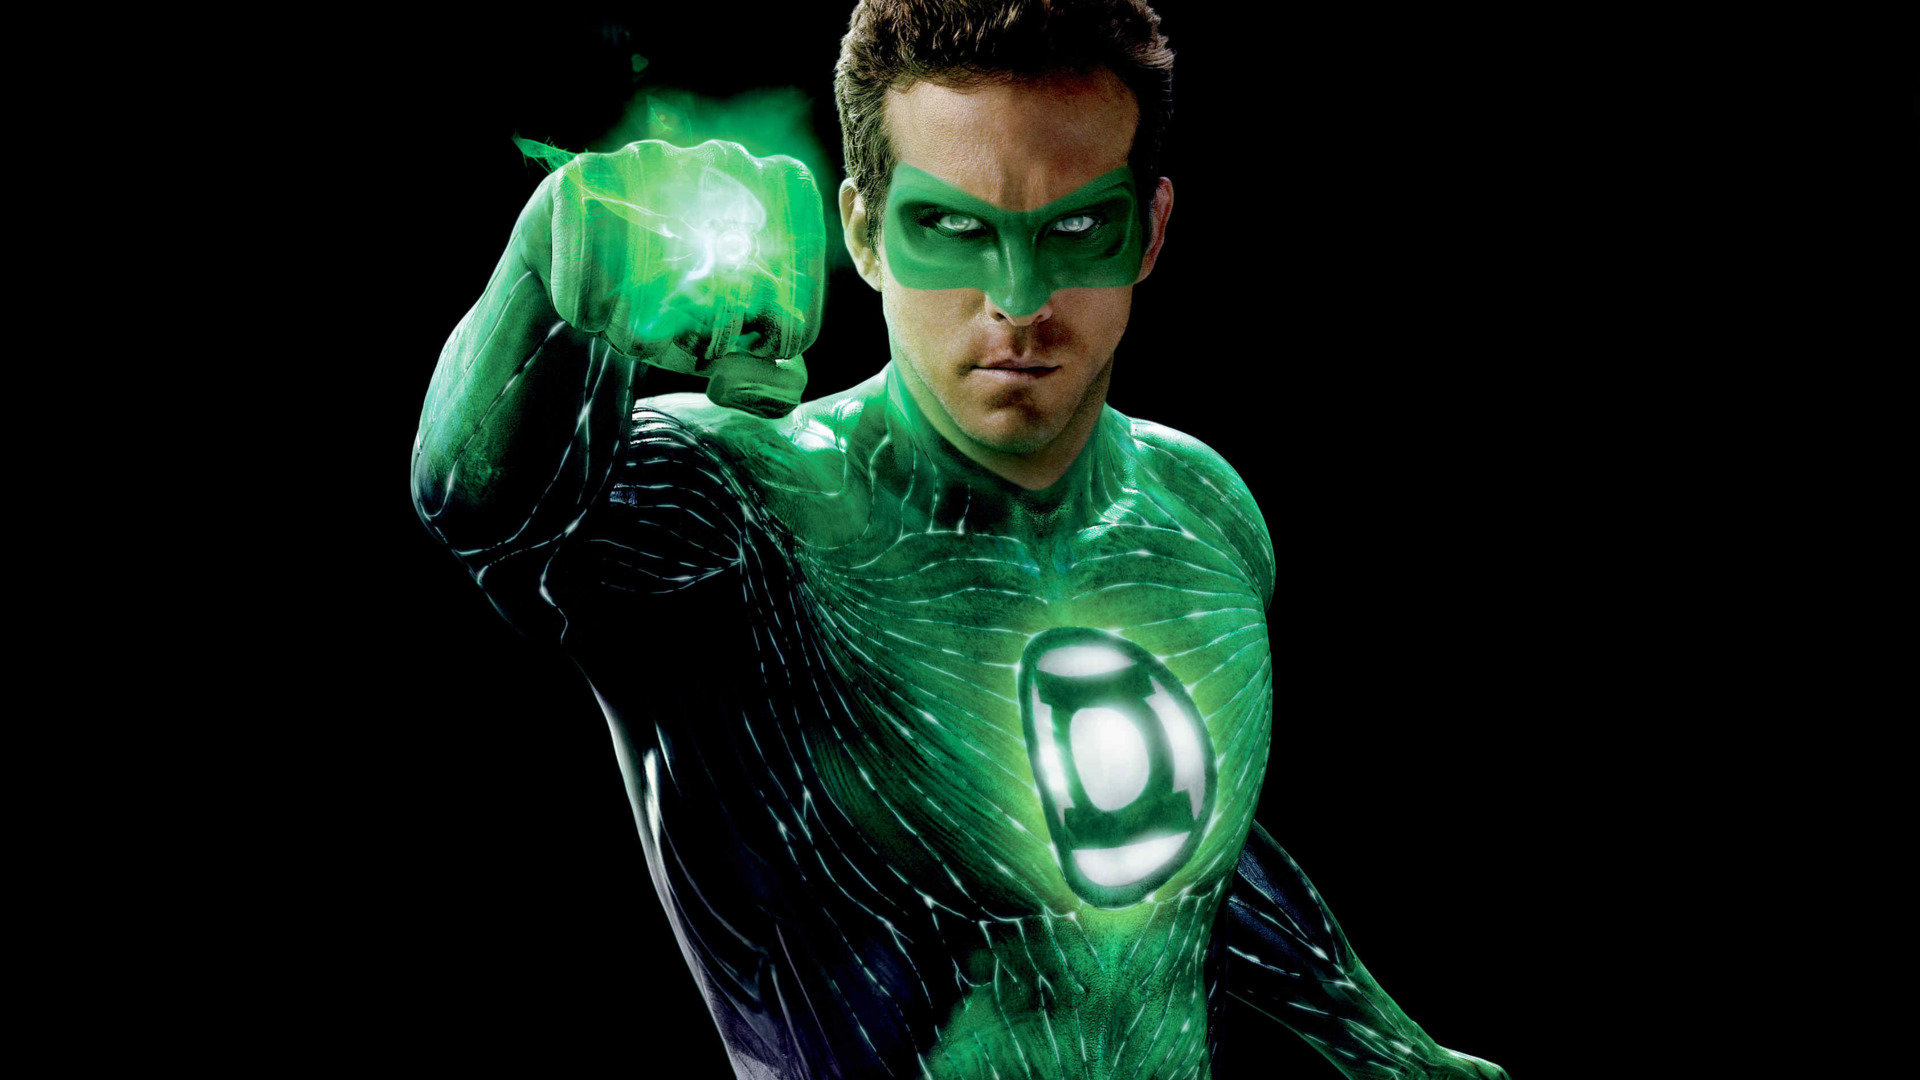 [60+] Green Lantern Movie Wallpapers | WallpaperSafari